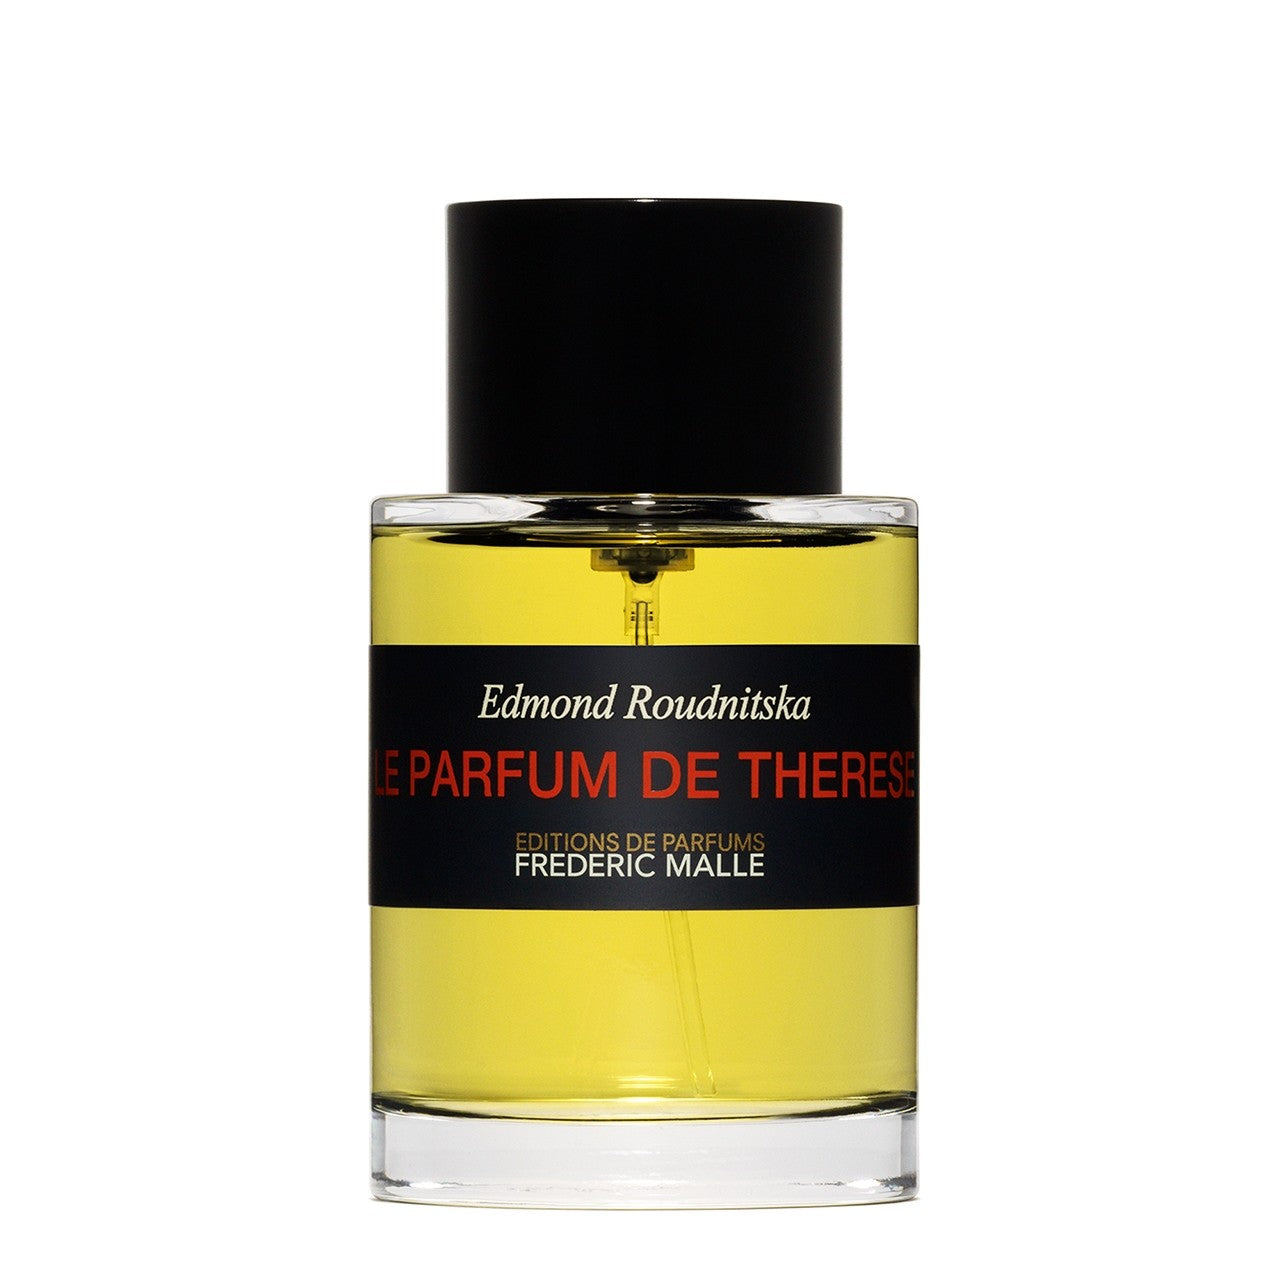 Editions de Parfums Frederic Malle - Le Parfum de Thérése.